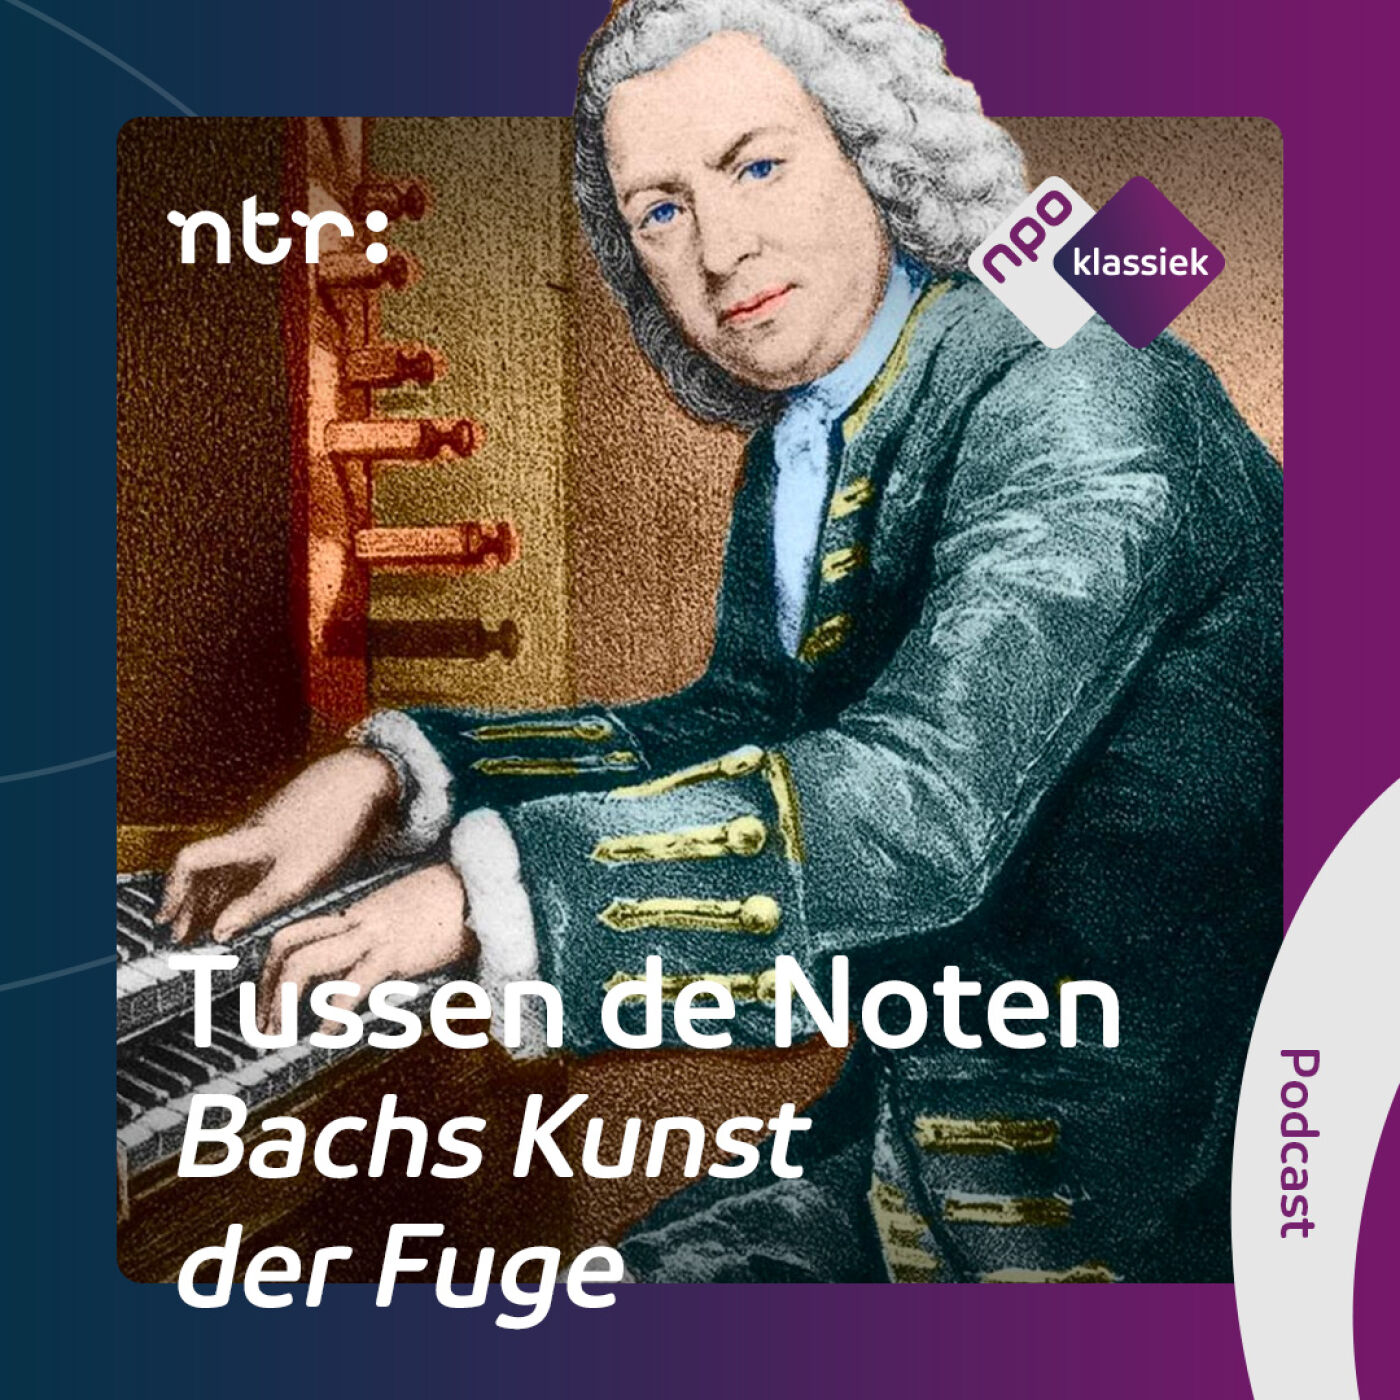 #4 - Bachs Kunst der Fuge: Het échte werk - 4. Het wonder van de spiegelfuga’s (S04)